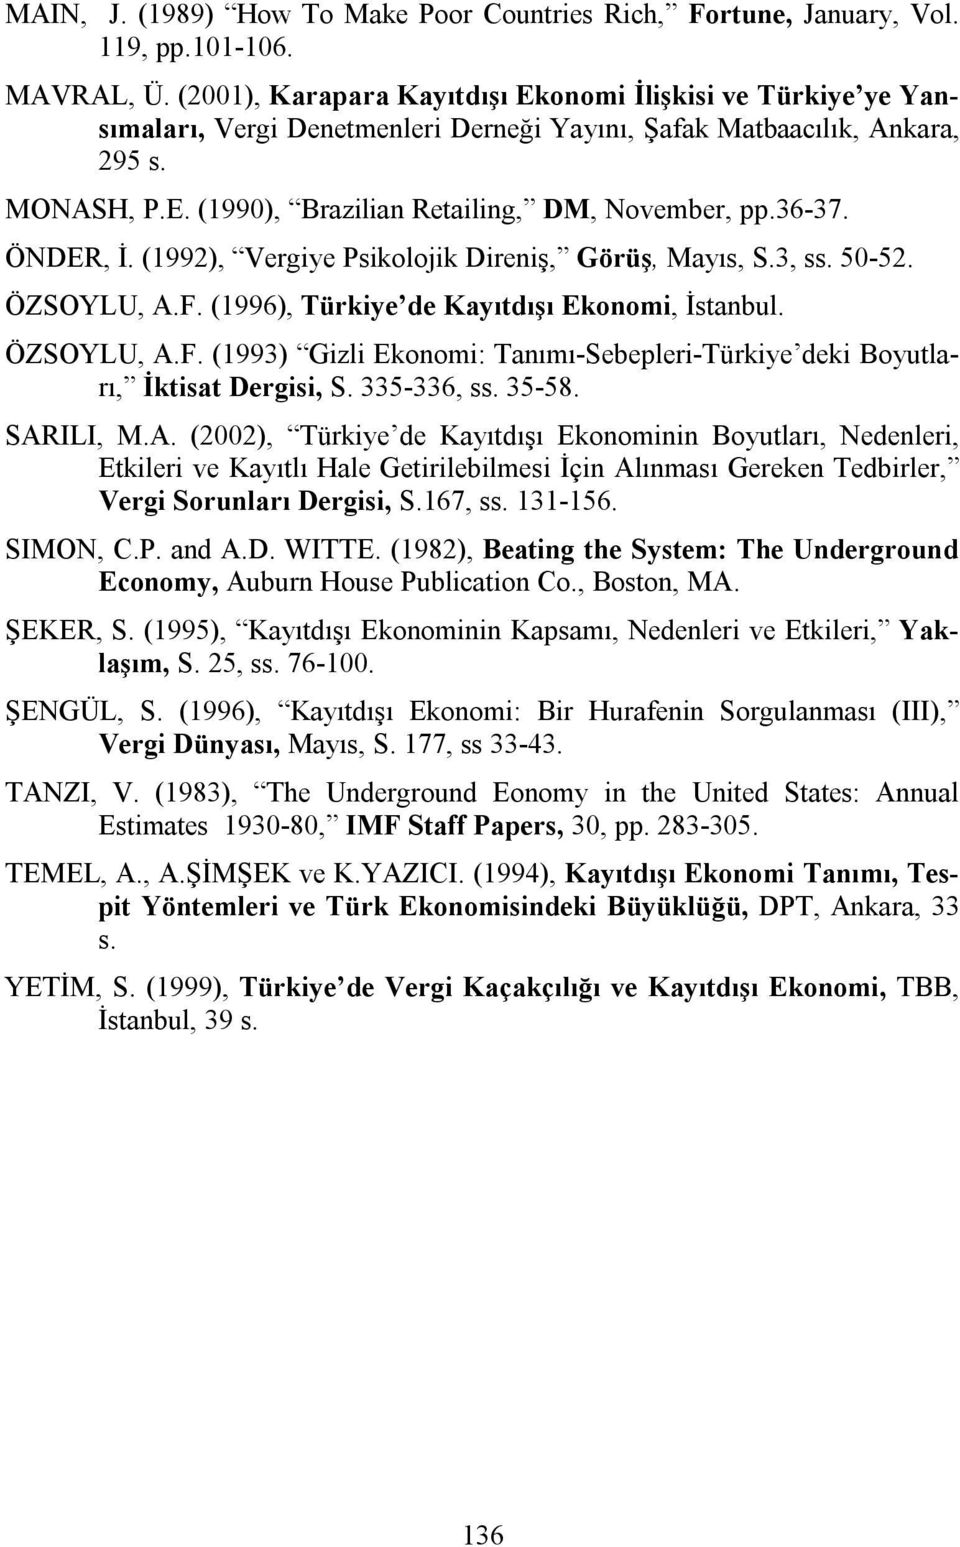 36-37. ÖNDER, İ. (1992), Vergiye Psikolojik Direniş, Görüş, Mayıs, S.3, ss. 50-52. ÖZSOYLU, A.F. (1996), Türkiye de Kayıtdışı Ekonomi, İstanbul. ÖZSOYLU, A.F. (1993) Gizli Ekonomi: Tanımı-Sebepleri-Türkiye deki Boyutları, İktisat Dergisi, S.